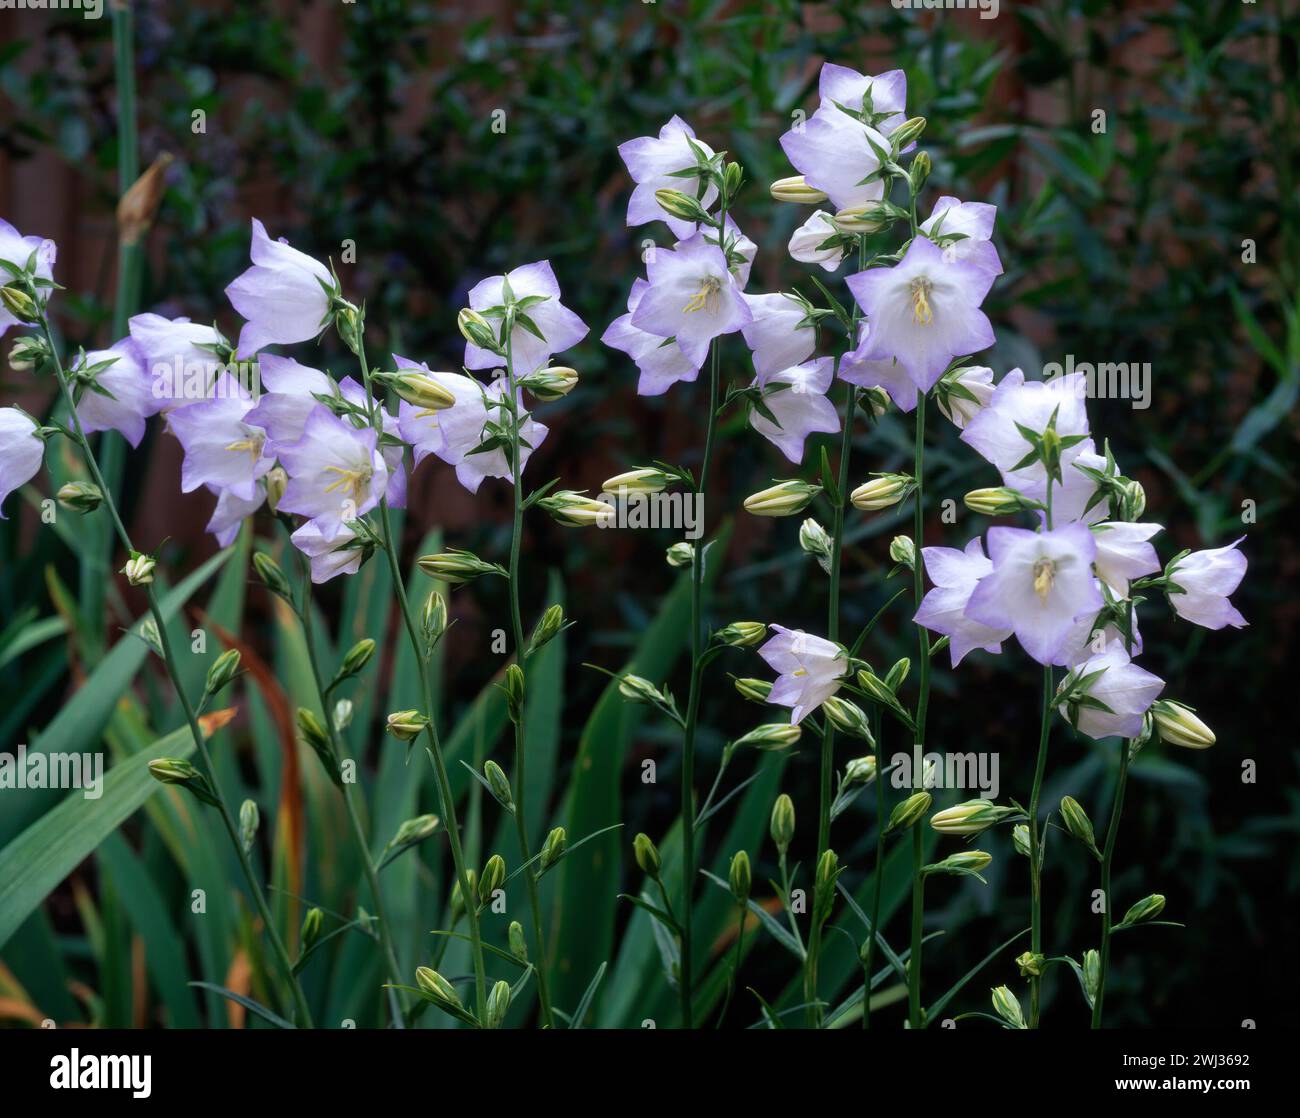 Zarte weiße und blasslilafarbene Blüten der Campanula persicifolia „Chettle Charm“ wachsen im englischen Garten, England, Großbritannien Stockfoto